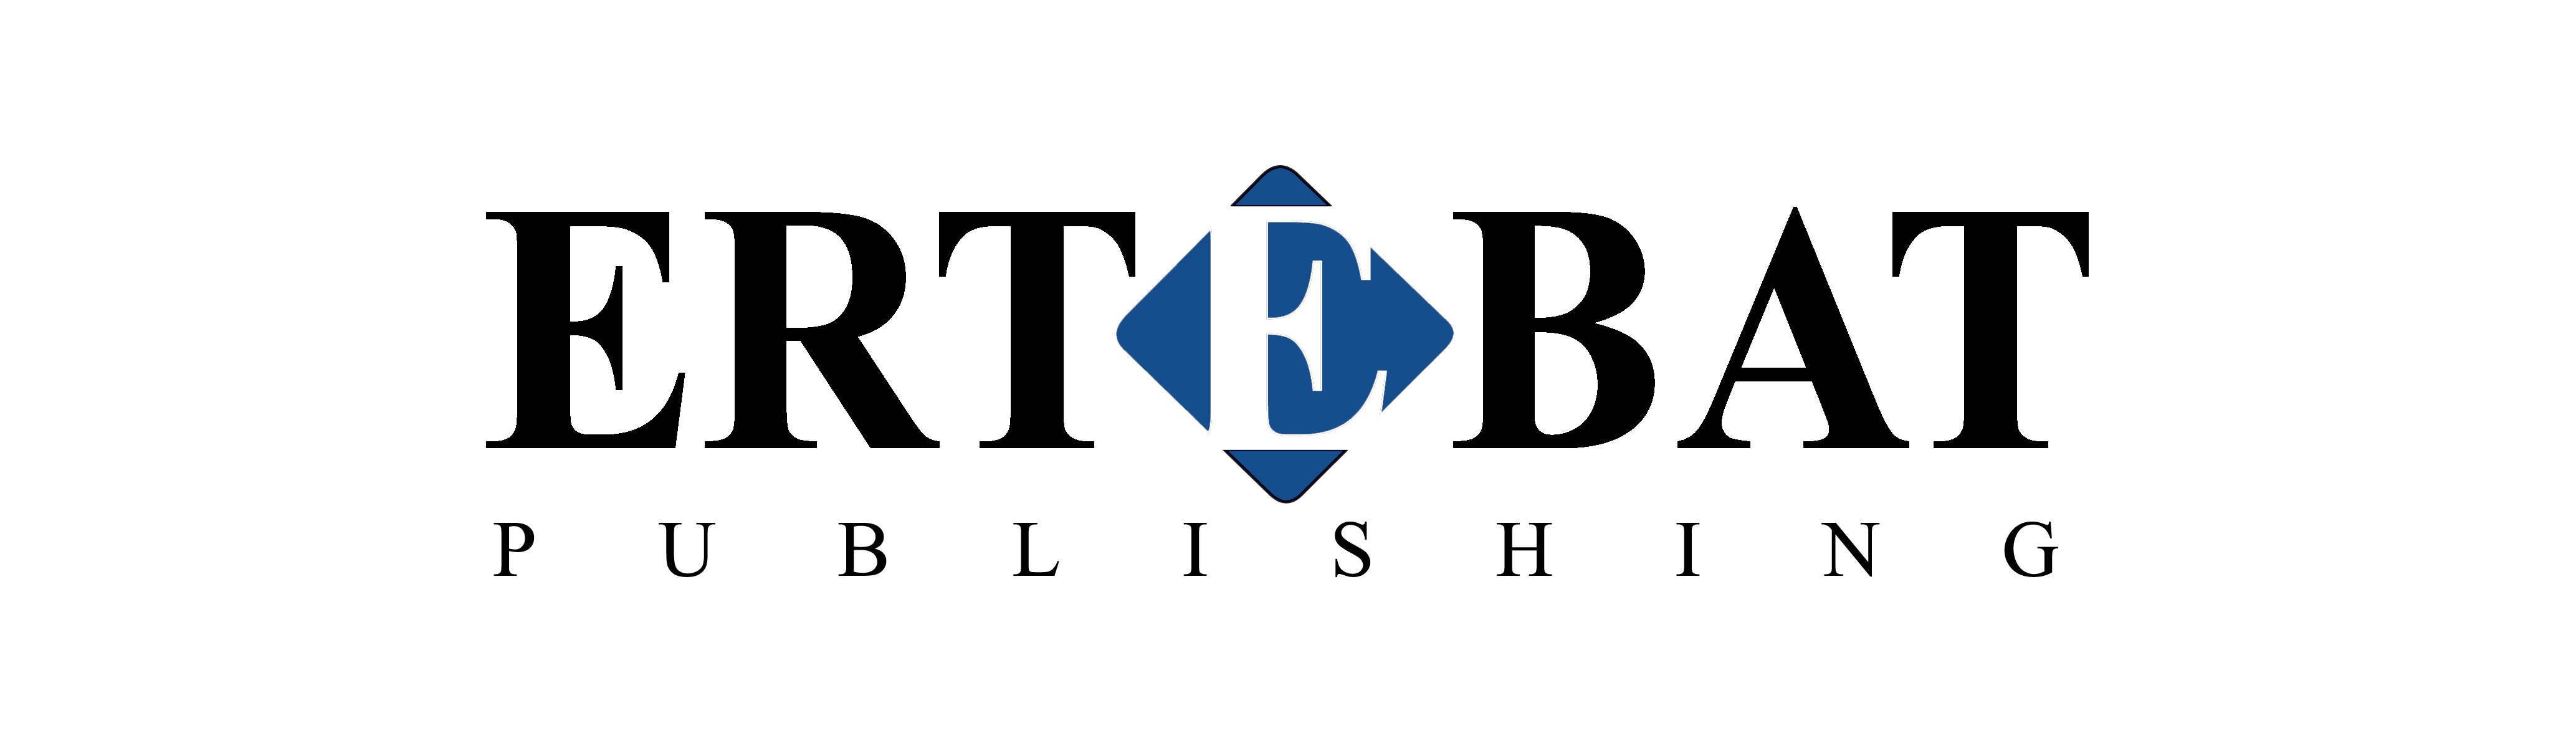 Ertebat Publishing FZ LLC